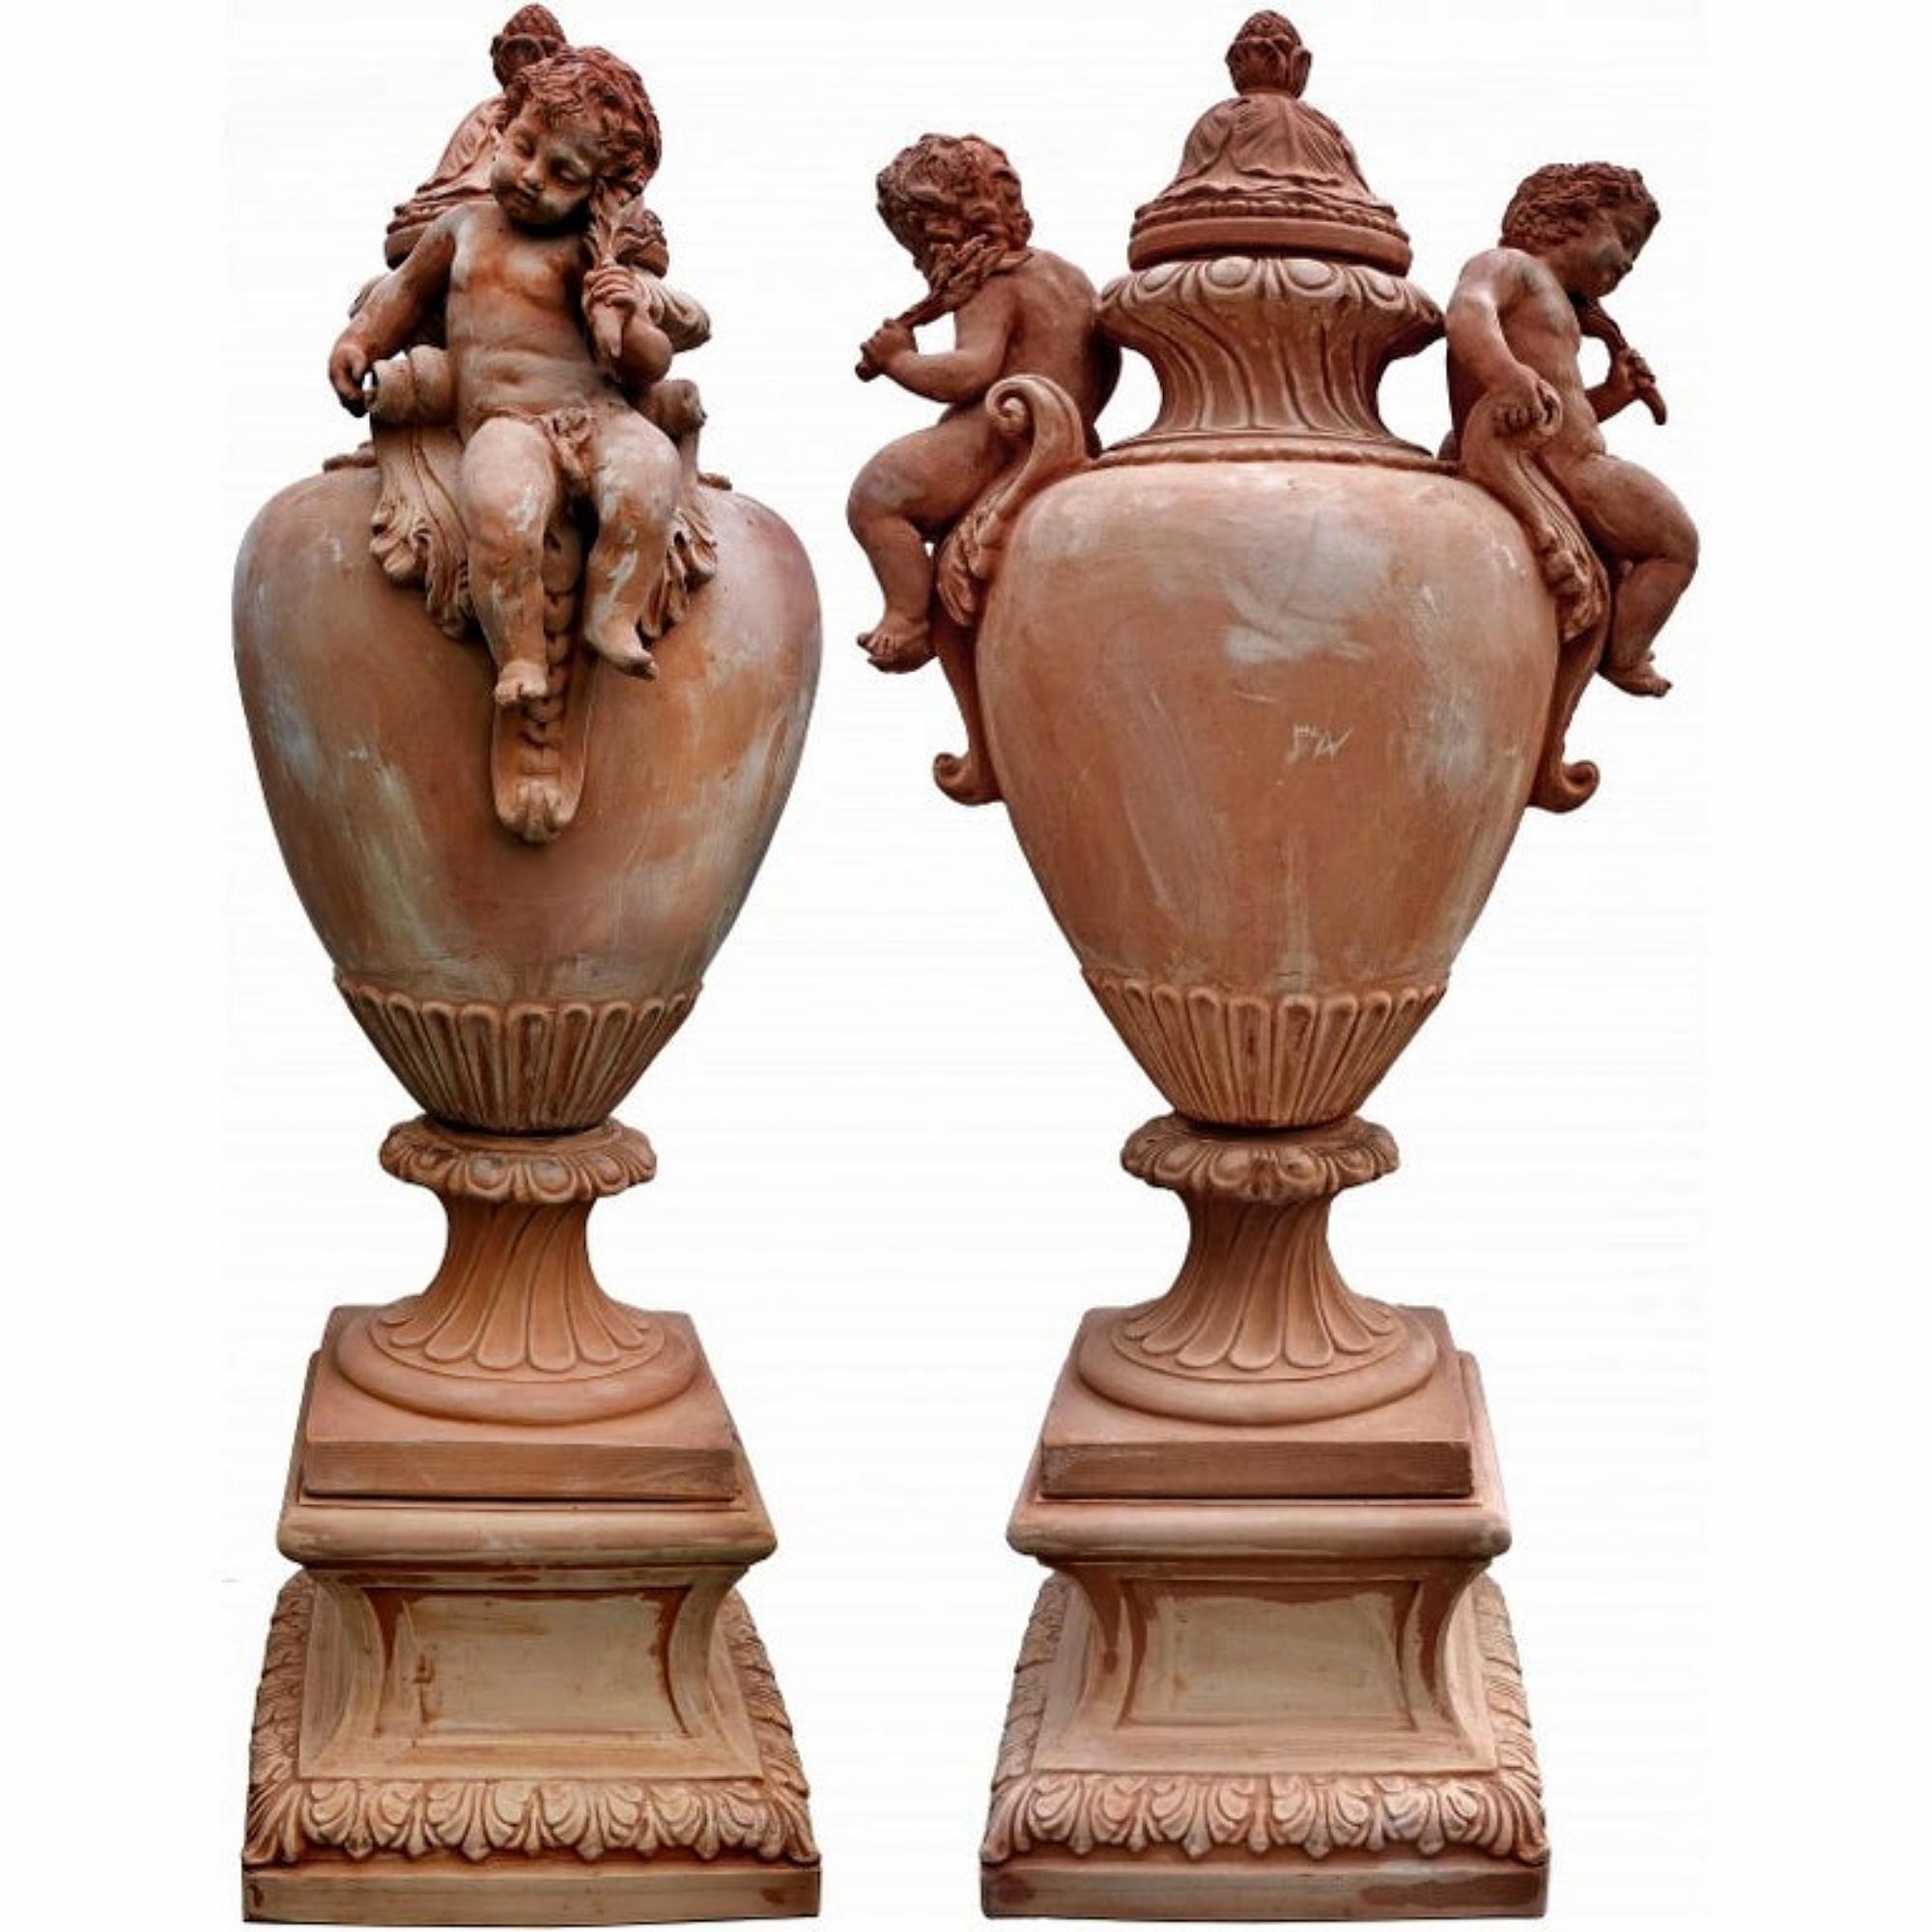 Énormes vases baroques avec putti - terre cuite de L'Impruneta fin 19e / 20e siècle.

Grands vases baroques avec socles pour une hauteur maximale (socles compris) de 154 cm.
Les deux putti sont magnifiques, leur finition est parfaite. Ce pot